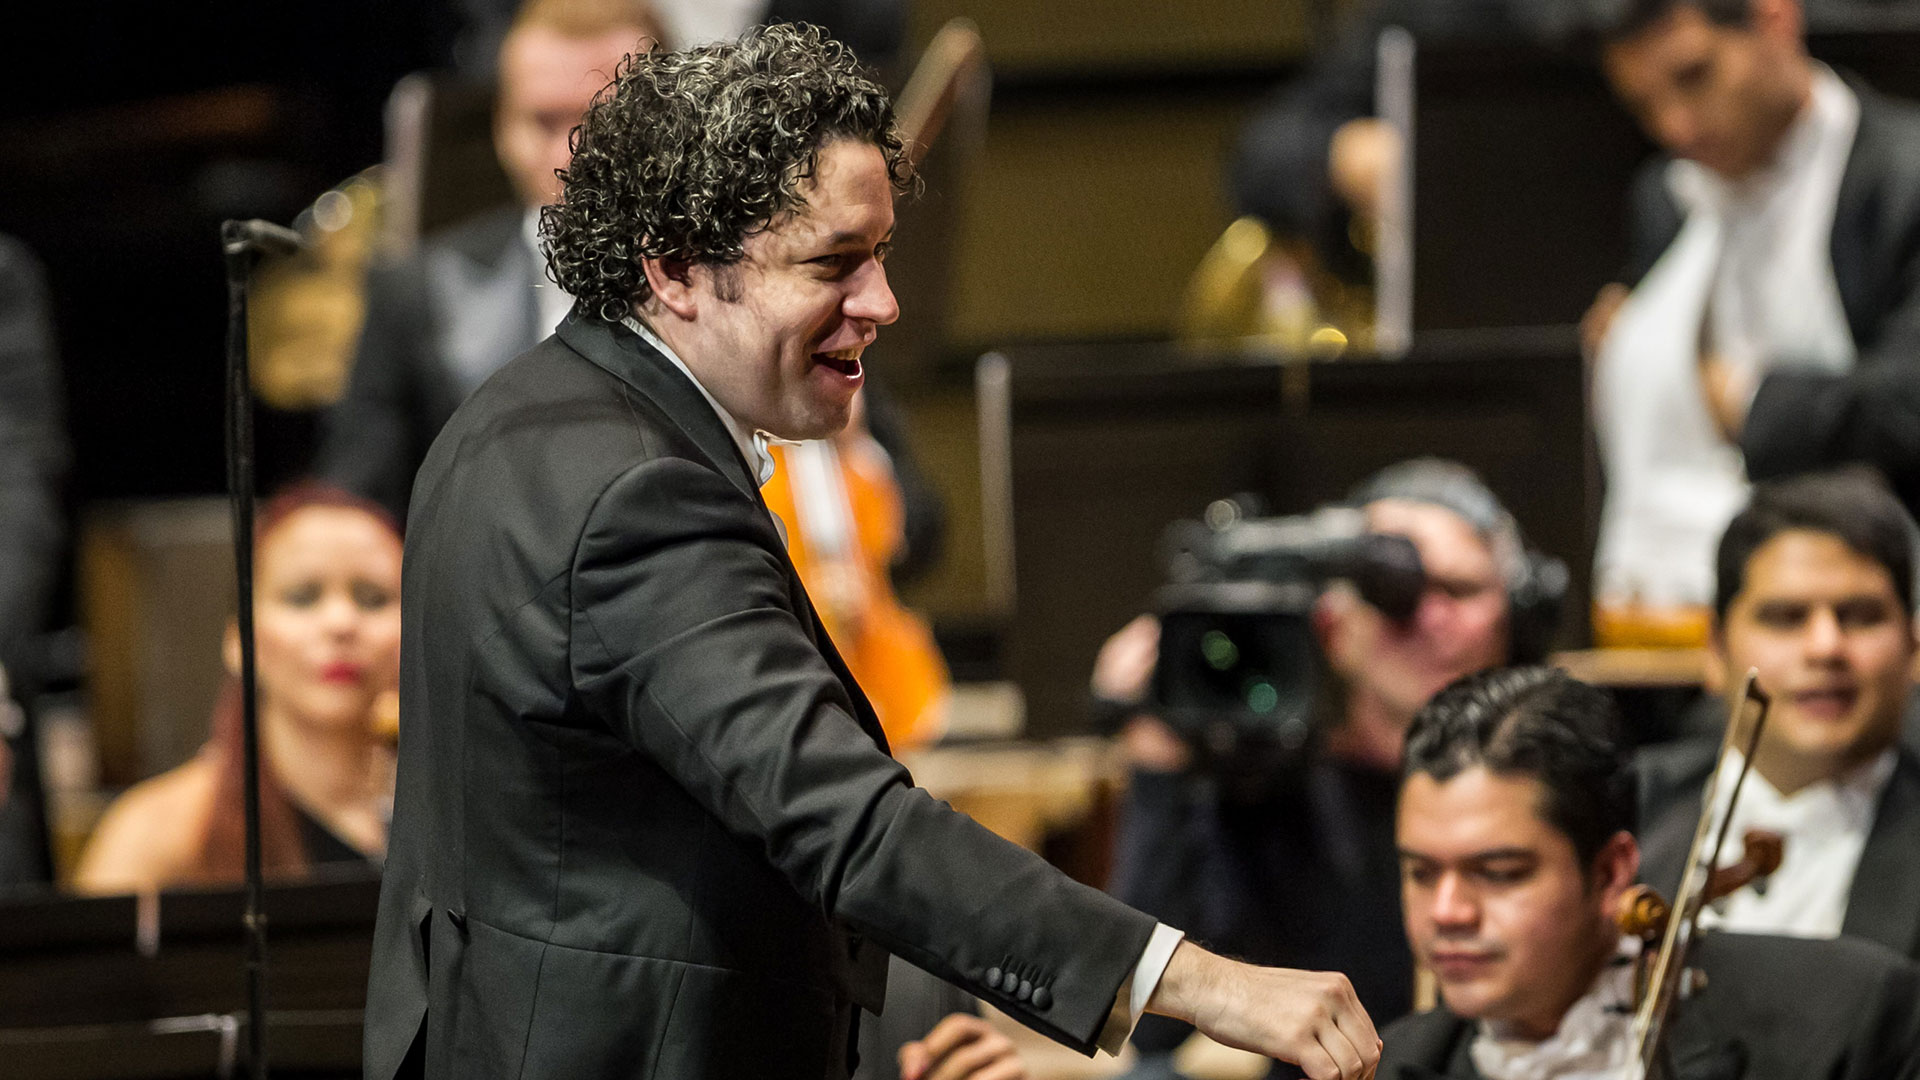 El compositor Dudamel alza su voz "contra la violencia y la represión" del presidente Maduro